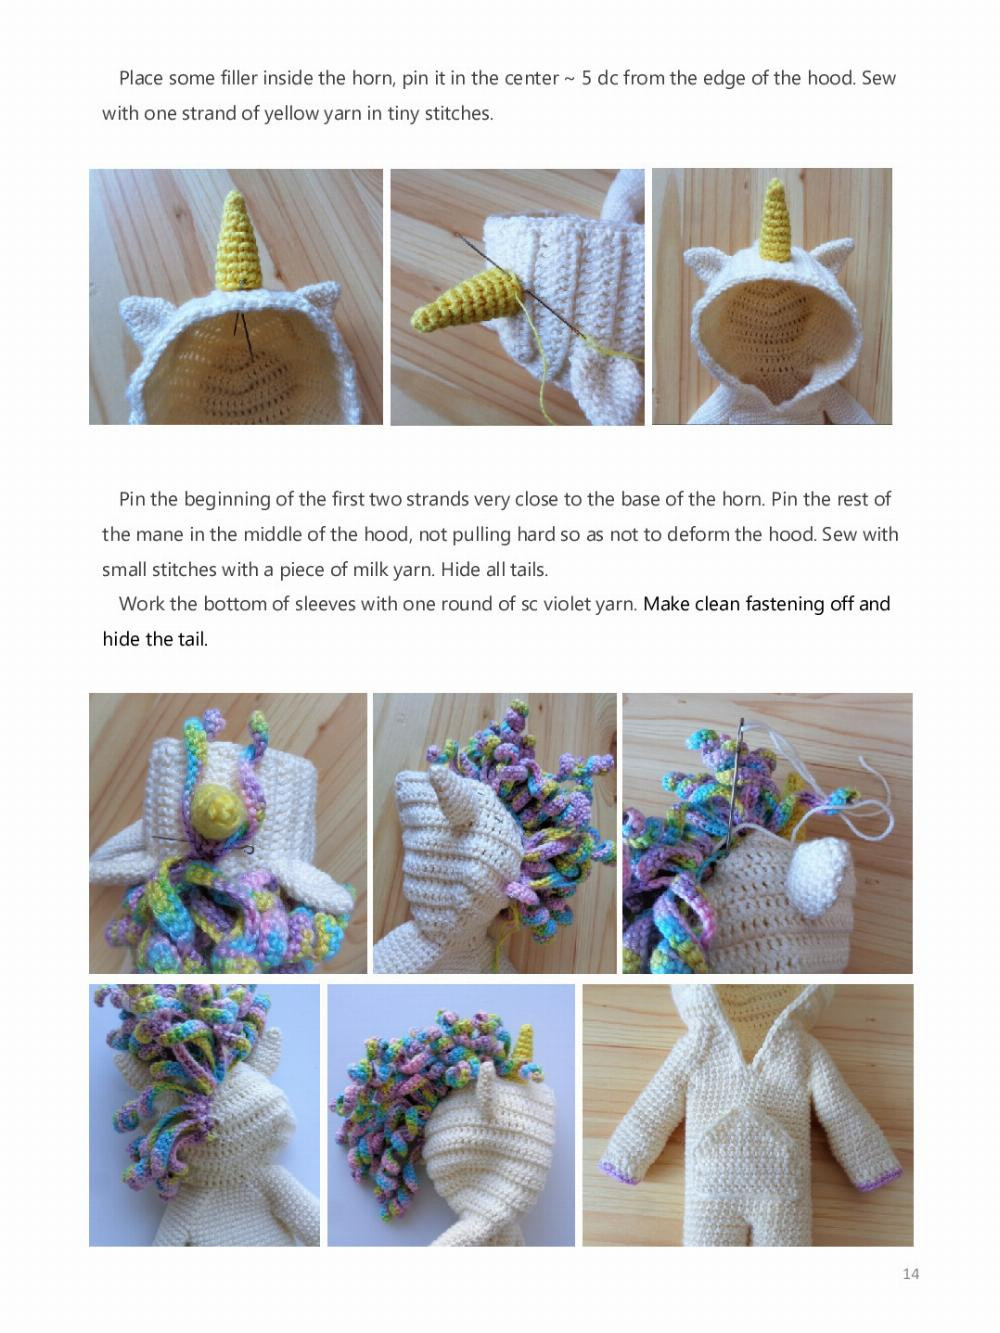 unicorn outfit crochet pattern